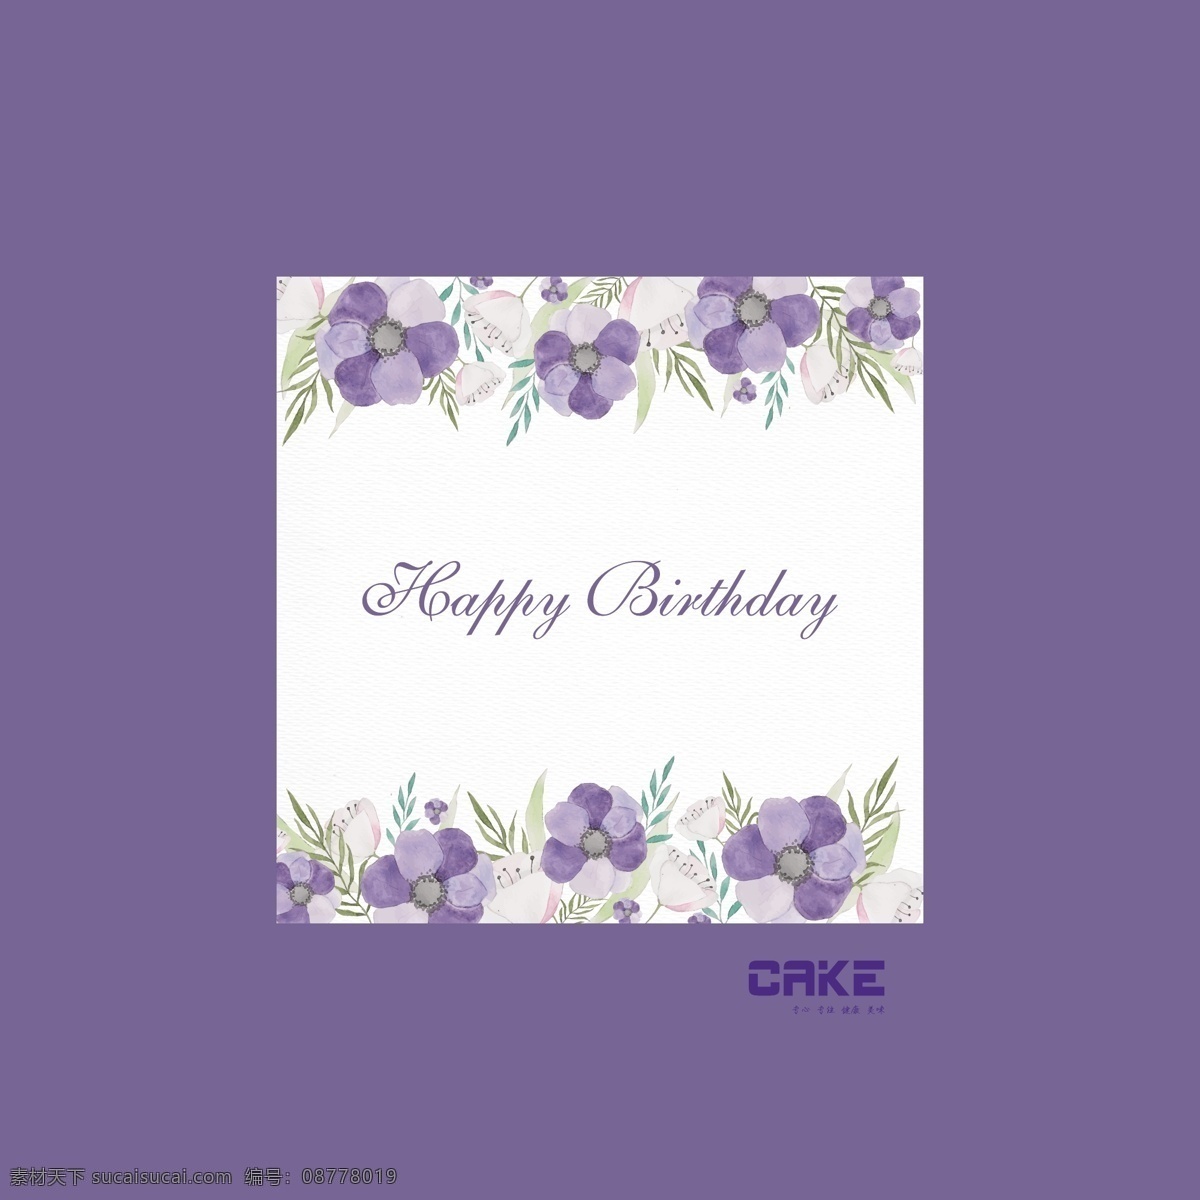 三 体式 透明 围 生日蛋糕 盒 包装盒 包装平面设计 包装设计 蛋糕盒 蛋糕 平面设计 蓝紫色 六寸蛋糕盒 三体式蛋糕盒 水粉 透明蛋糕盒 小清新